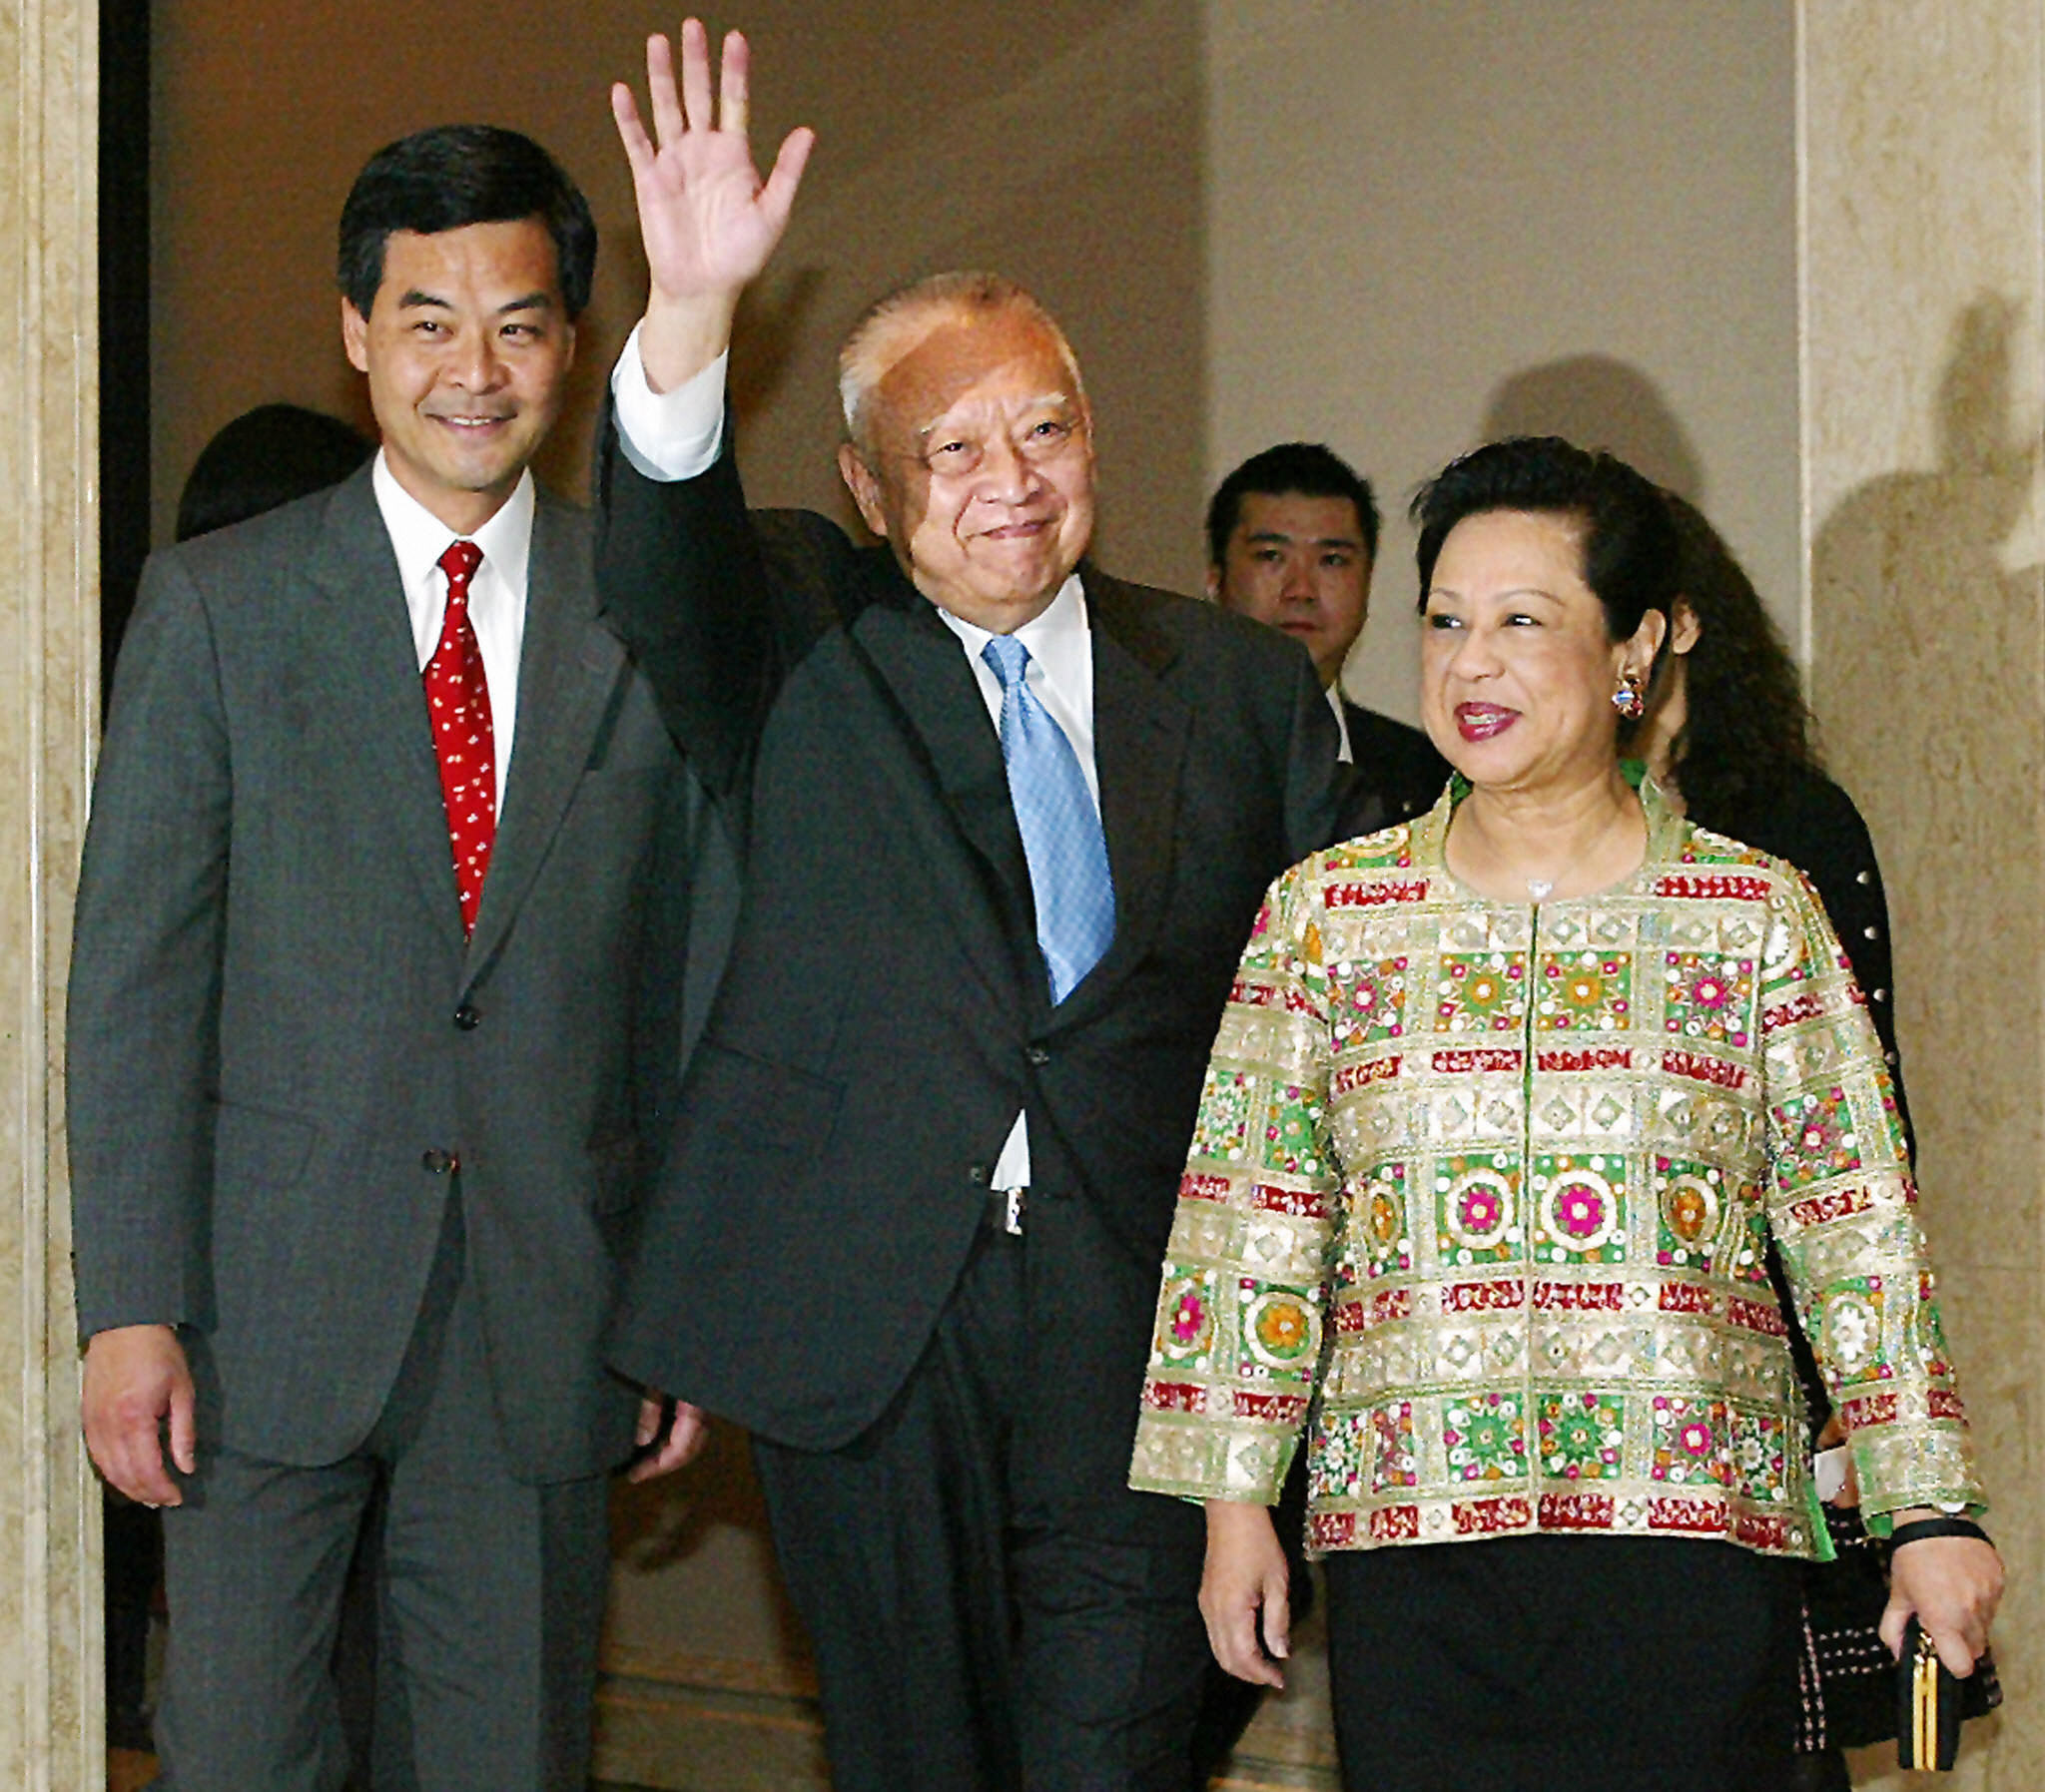 香港前特首董建华（中）因健康为由辞职后，2005年4月7日与妻子赵洪娉（右）一起出席在香港酒店举行的告别宴会。当时陪伴入场者即为担任香港特别行政区行政会议召集人